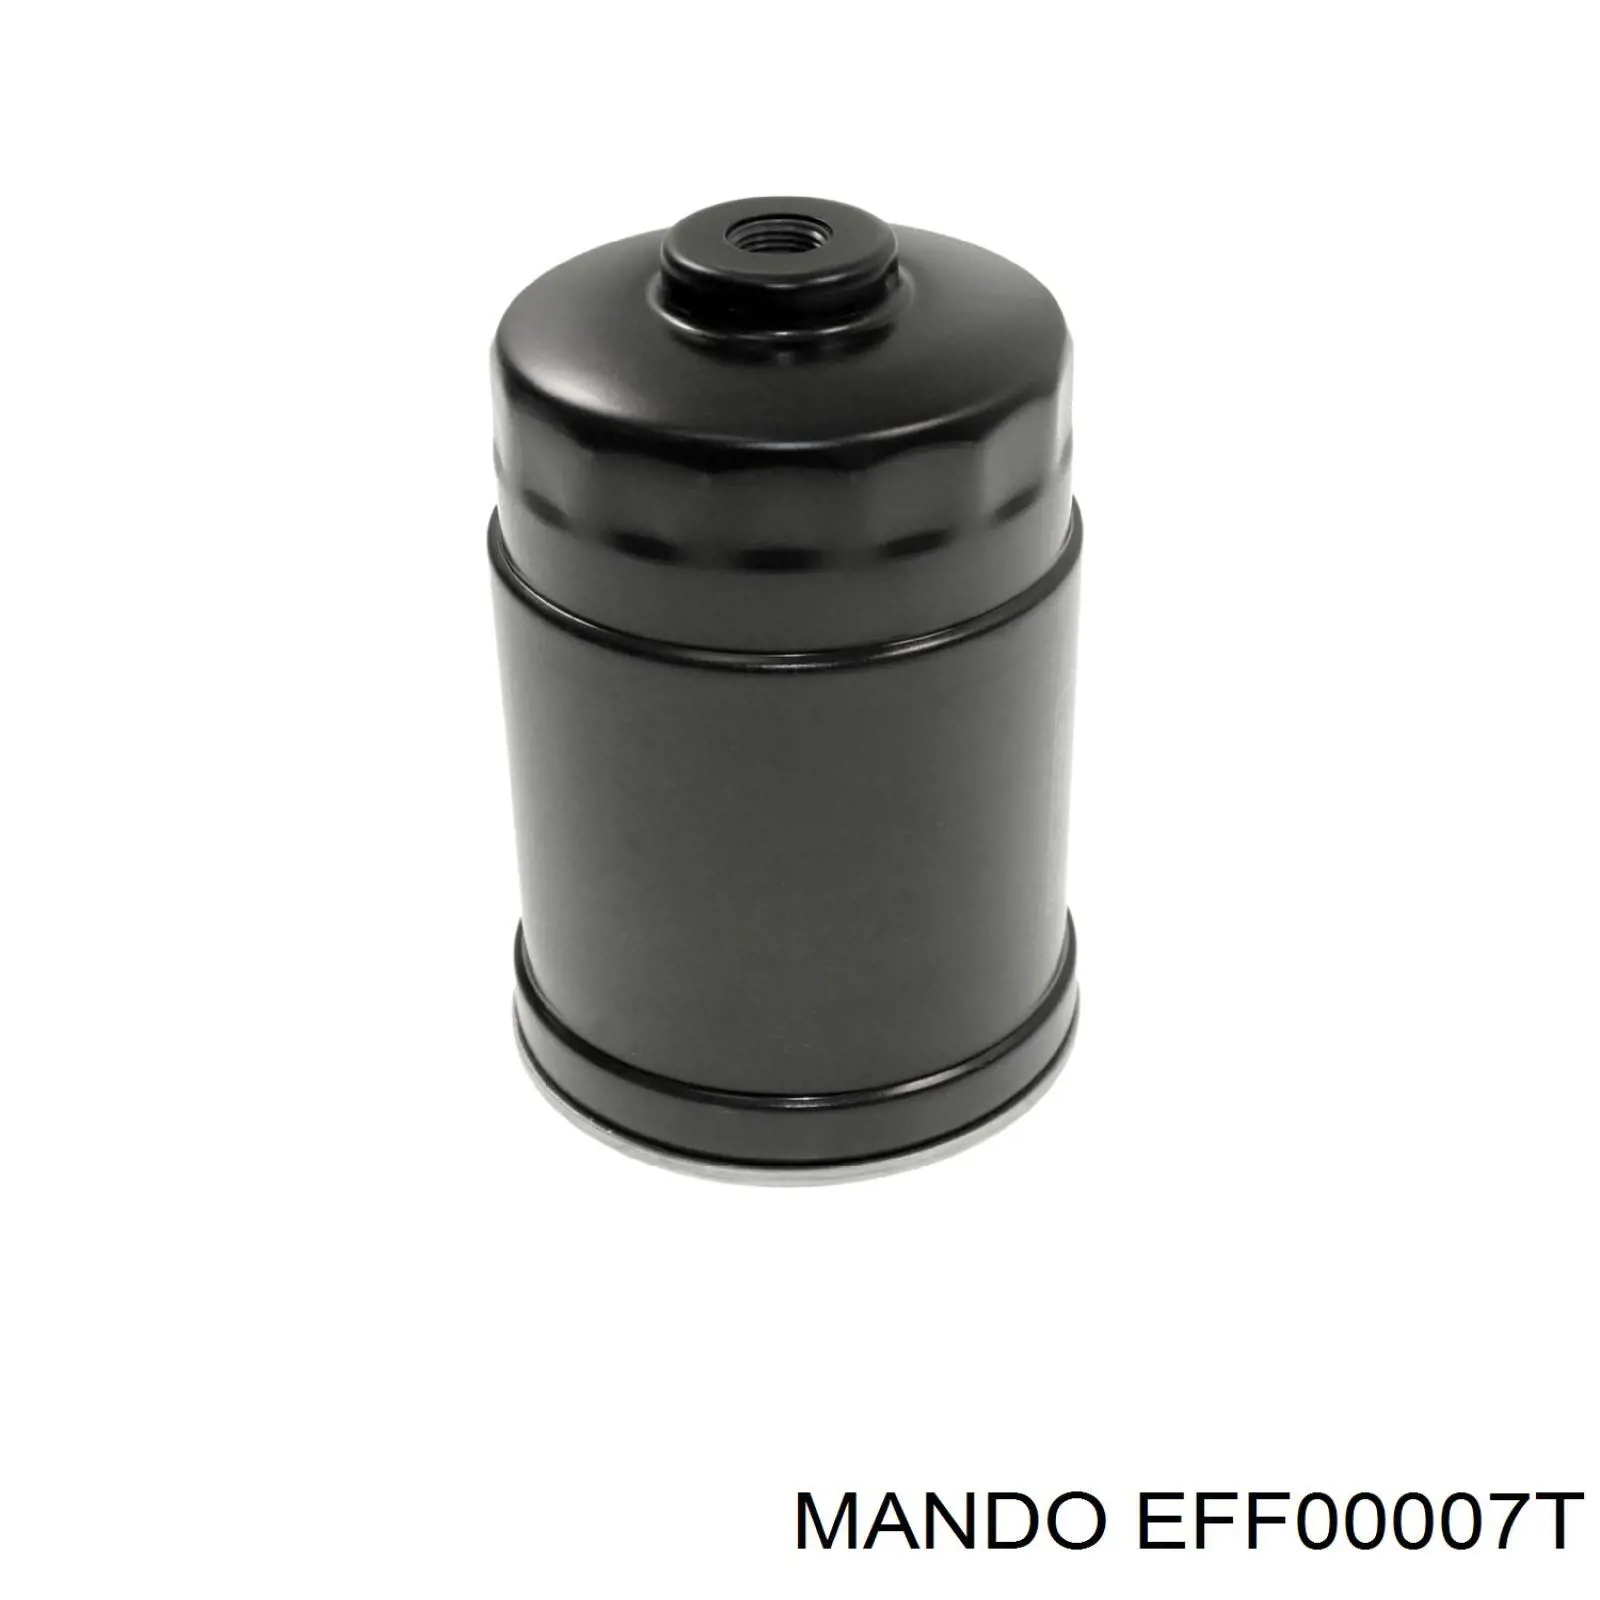 EFF00007T Mando топливный фильтр